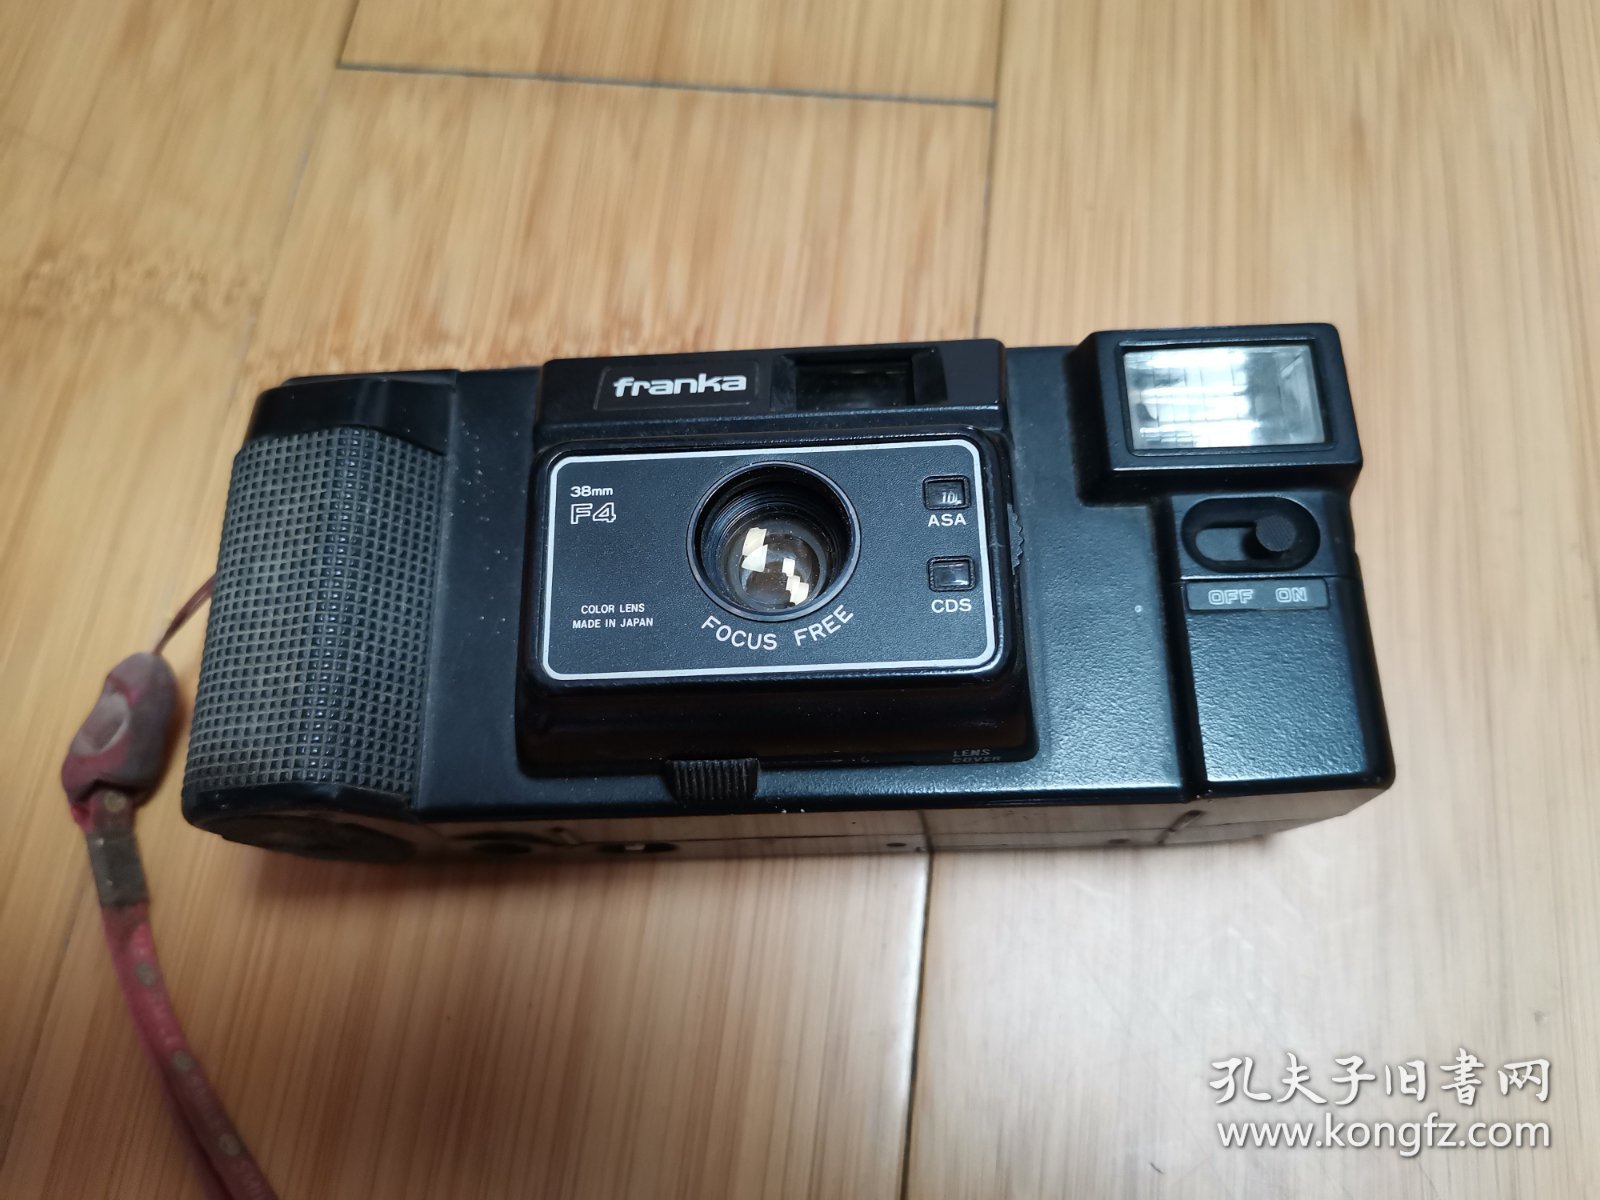 Franka牌x500胶卷相机（当配件机或影视道具出售），内有一卷胶卷